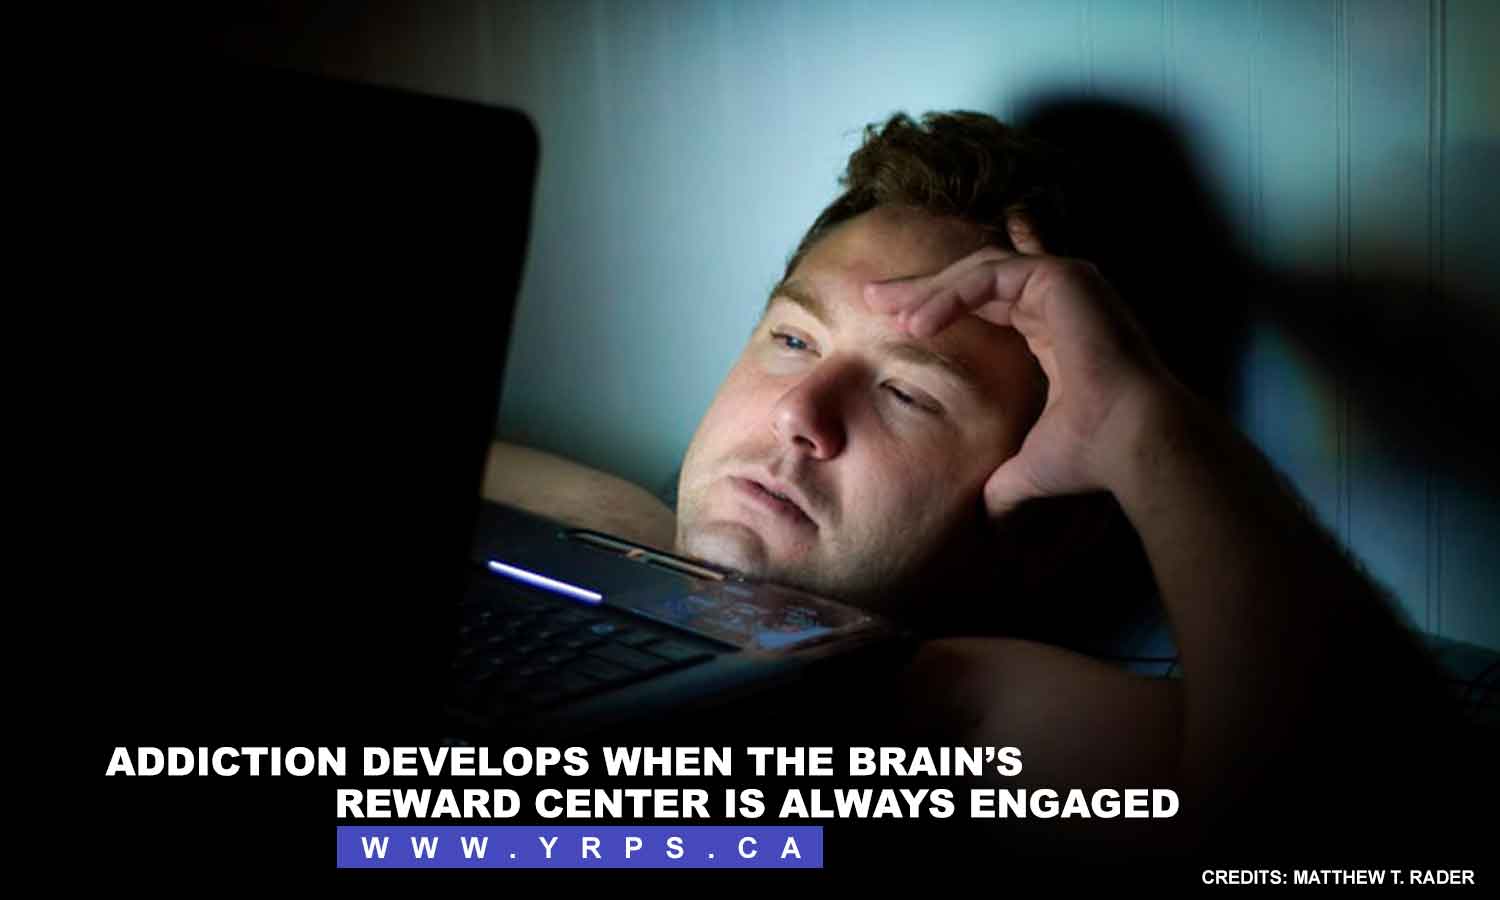 Addiction develops when the brain’s reward center is always engaged